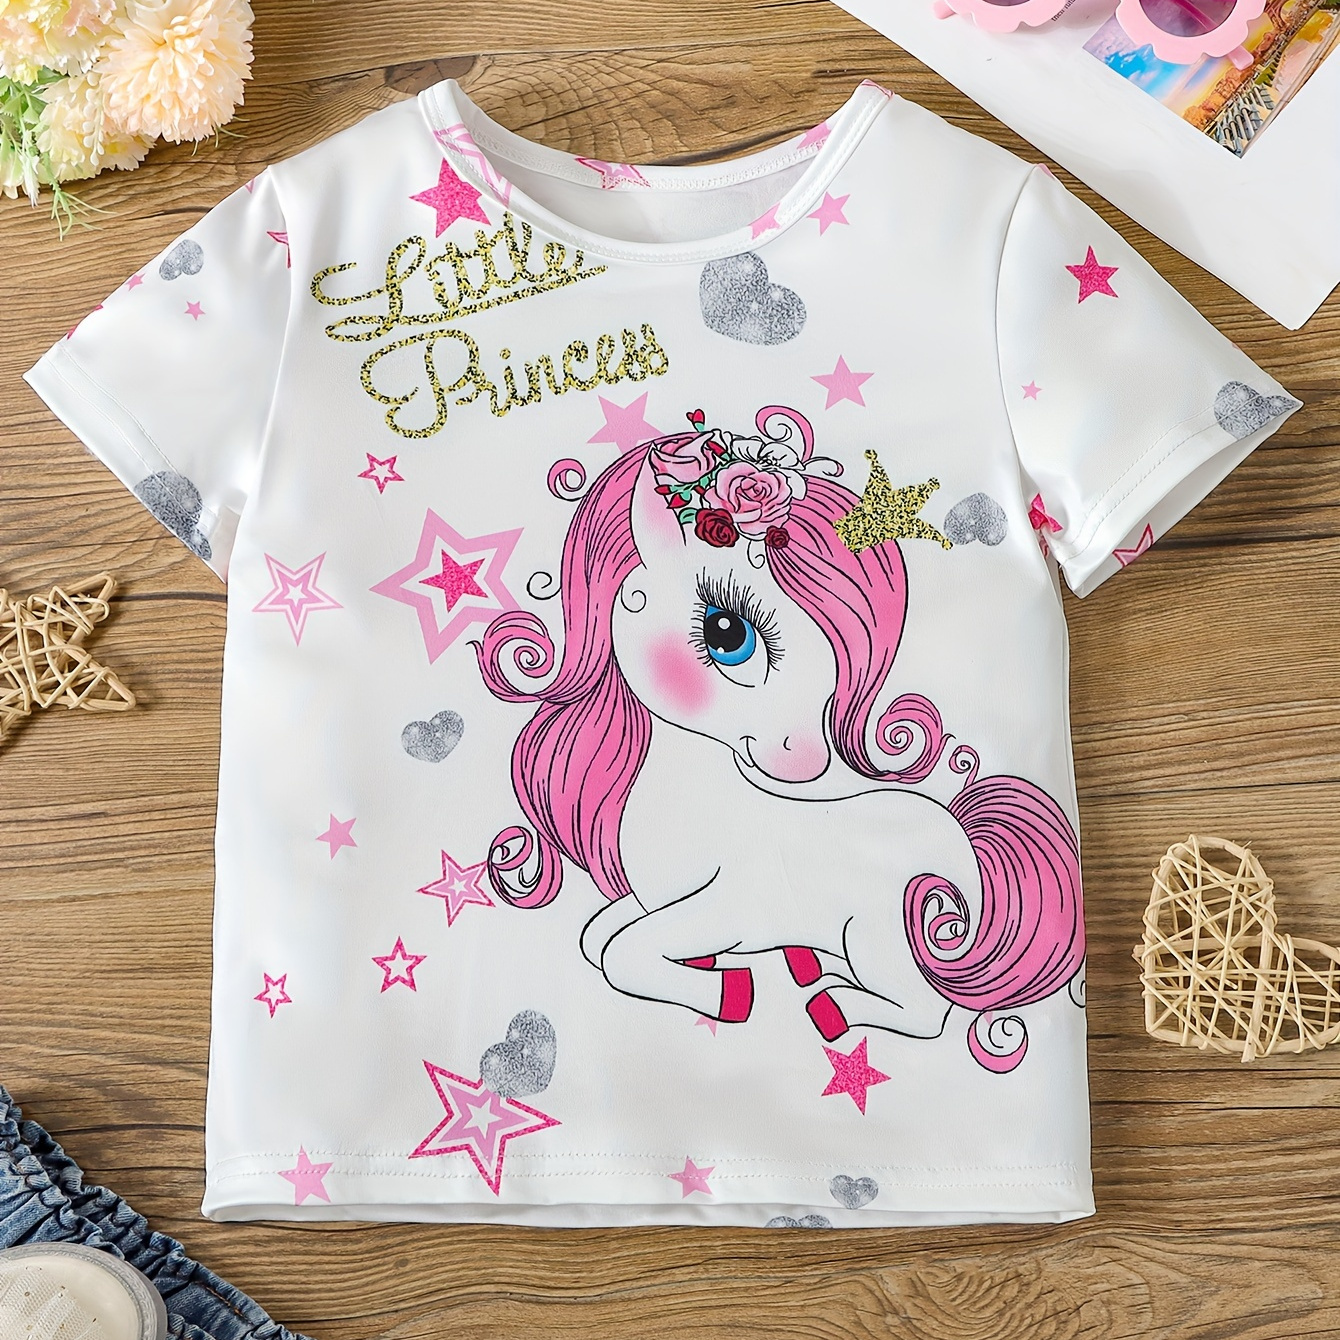 

Versatile Cartoon Unicorn Graphic Little Princess Print Short Sleeve T-shirt Tops For Girls Summer Gift